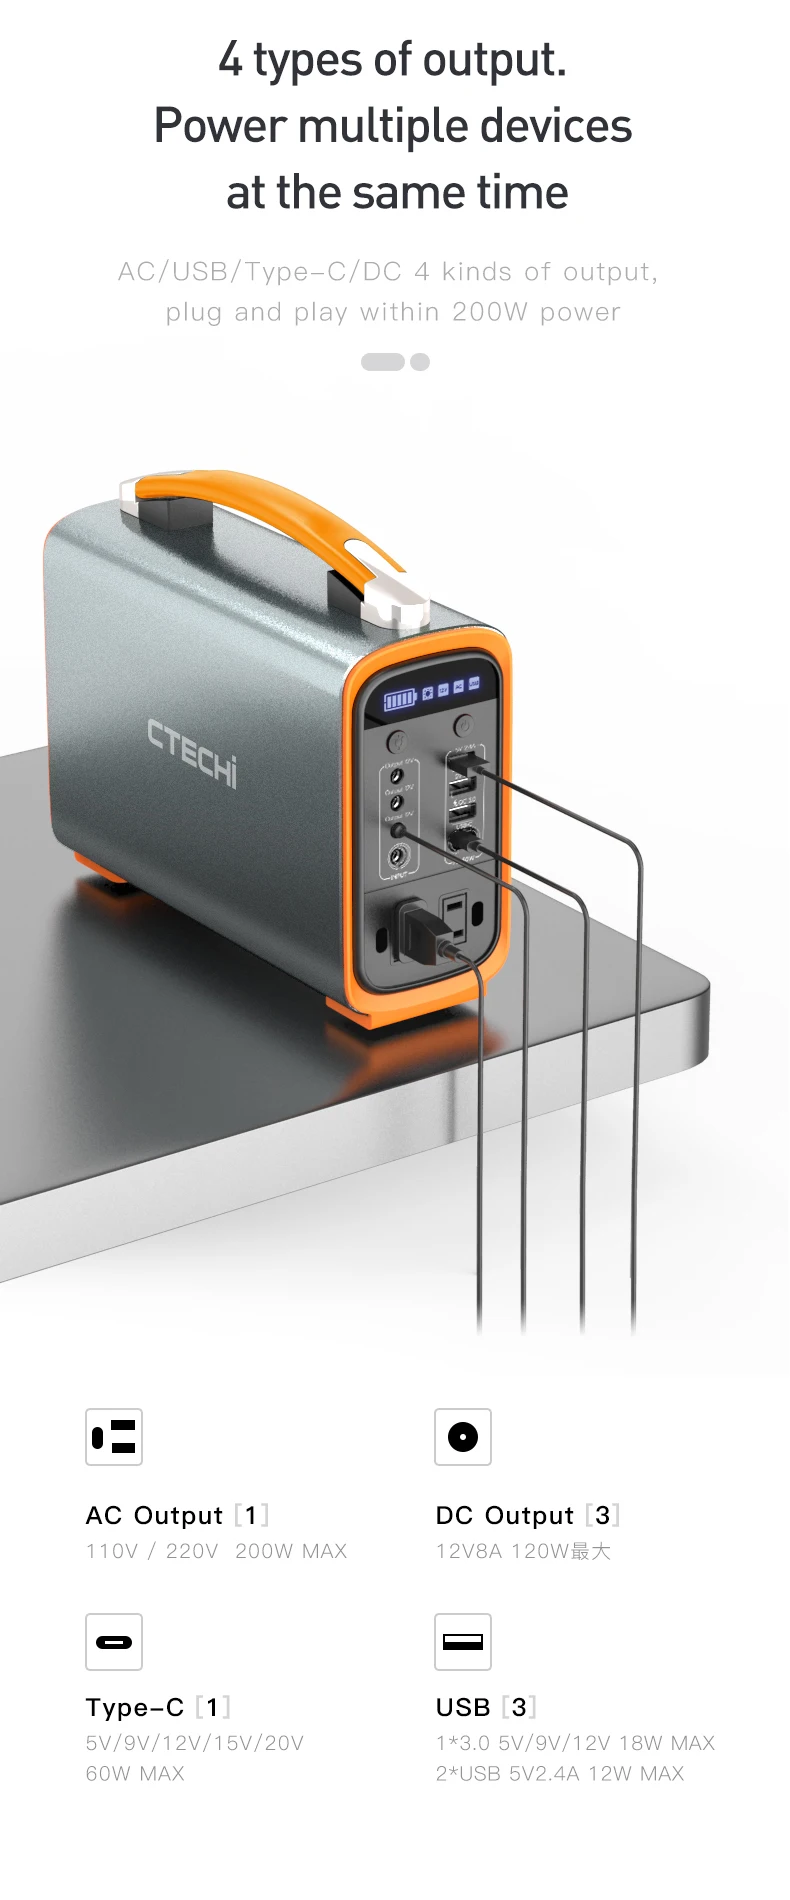 CTECHi – groupe électrogène solaire Portable GT200 Pro, 200W